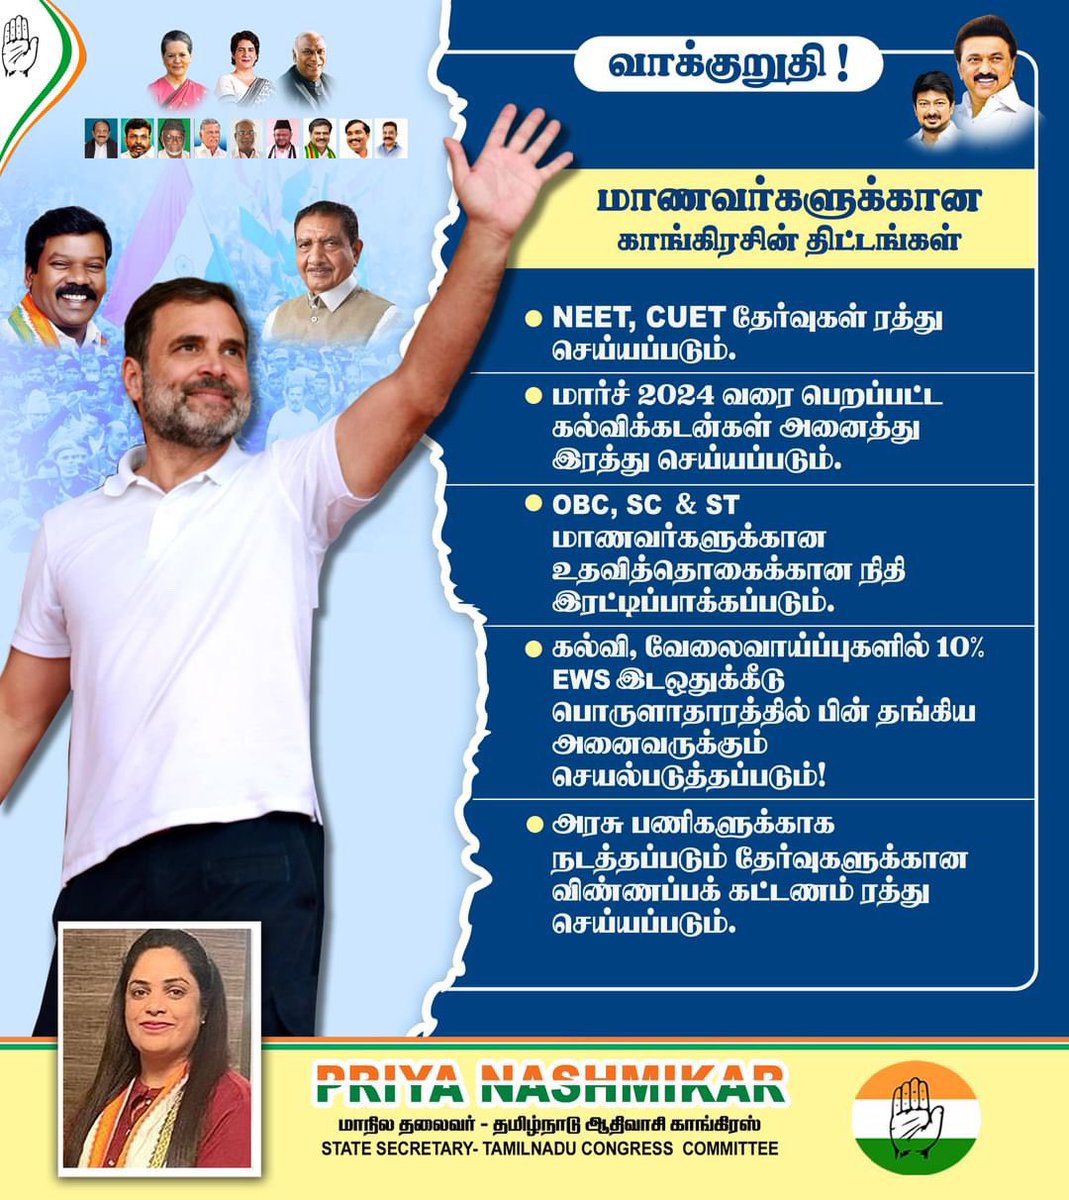 காங்கிரசின் மாணவர்களுக்கான வாக்குறுததி!!! #YuvaNyay  #CongressManifesto2024